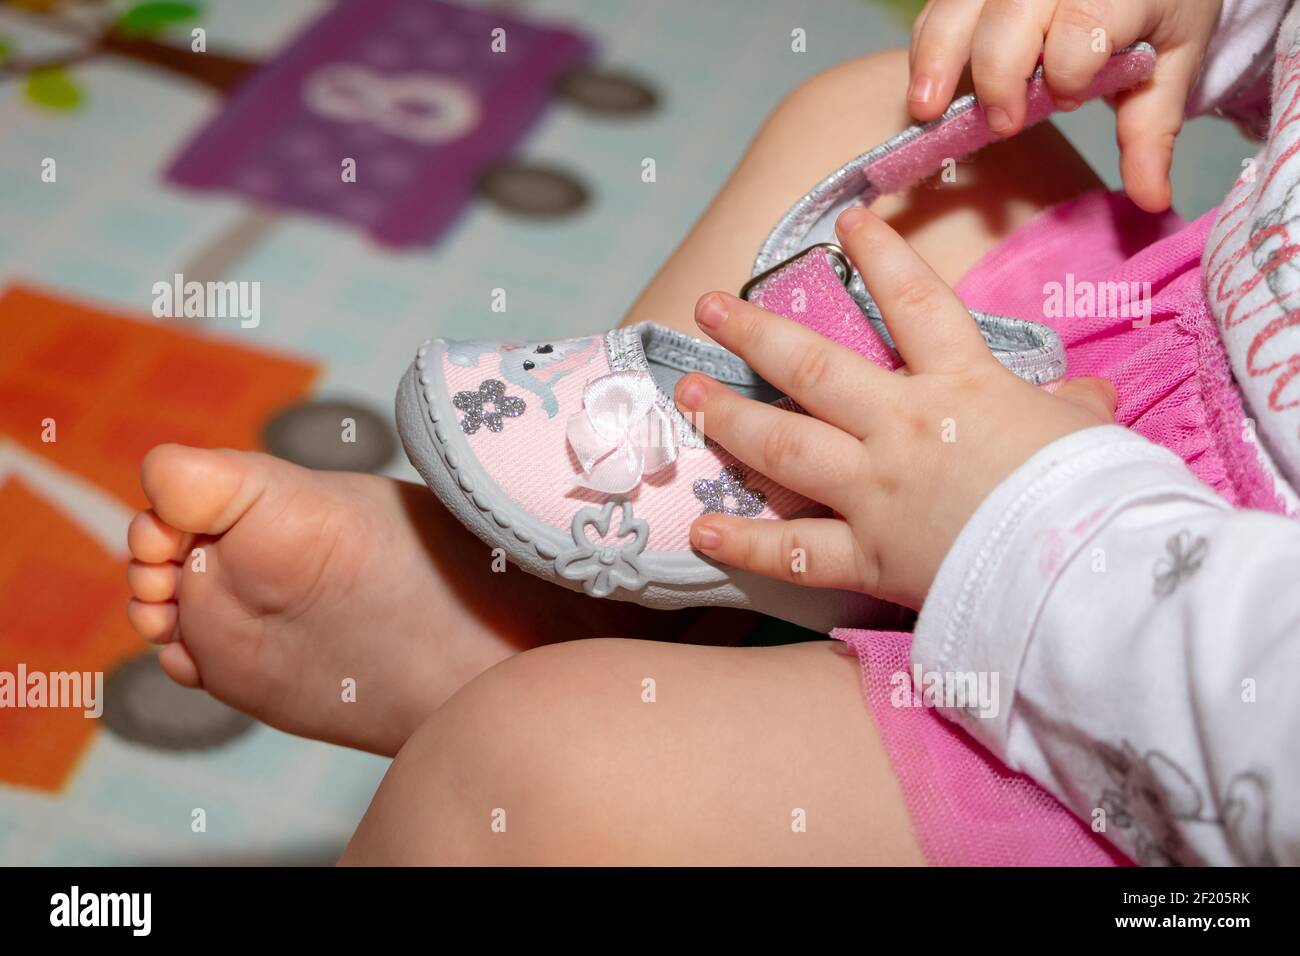 Una bambina di un anno sta giocando con le scarpe. Immagine ravvicinata  delle mani e dei piedi Foto stock - Alamy